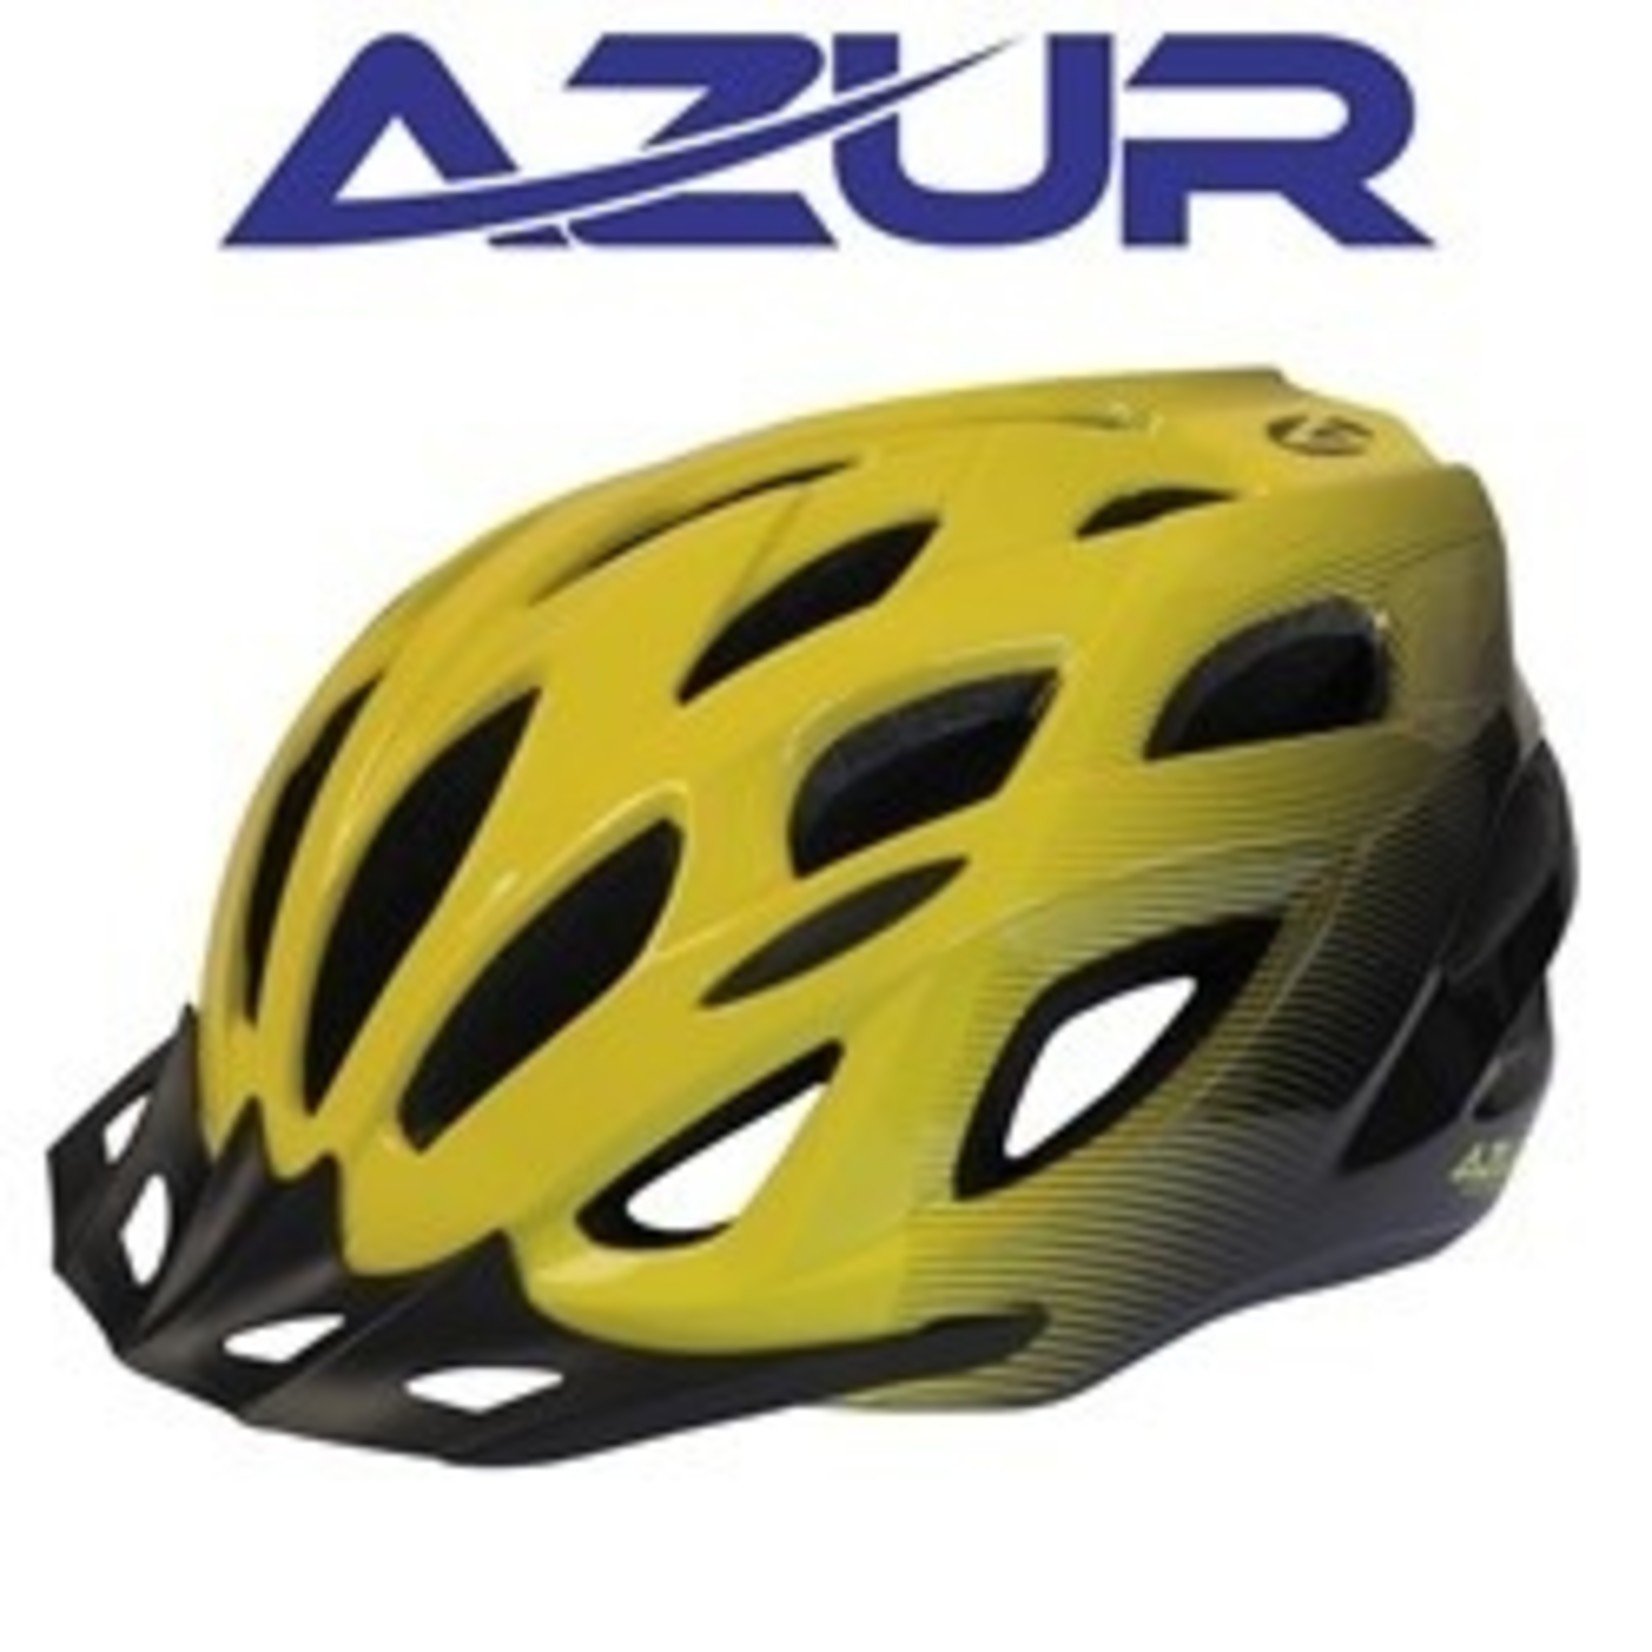 Azur Azur Bike Helmet - L61 Series Dial Comfort Fit System - Gloss Neon/Black Fade